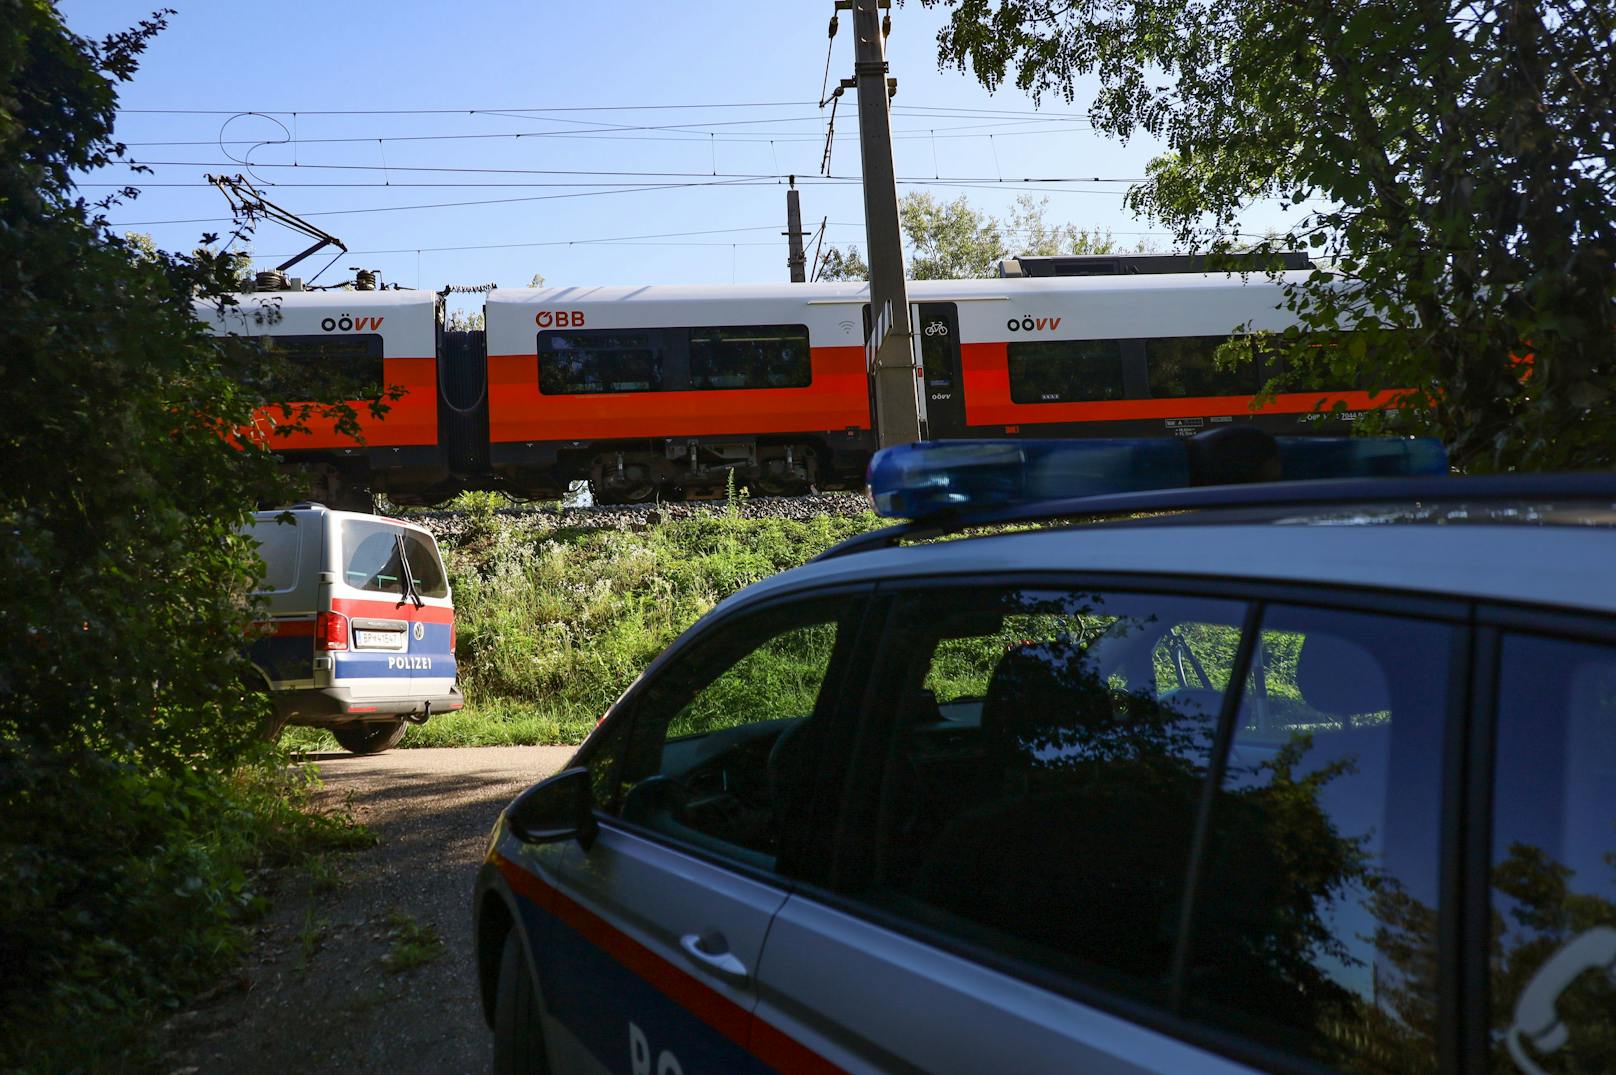 Eine "Mutprobe" oder ein "übler Scherz" hat am Samstag einen größeren Einsatz im Gleisbereich der Pyhrnbahn zwischen Ansfelden und Traun (Bezirk Linz-Land) ausgelöst.